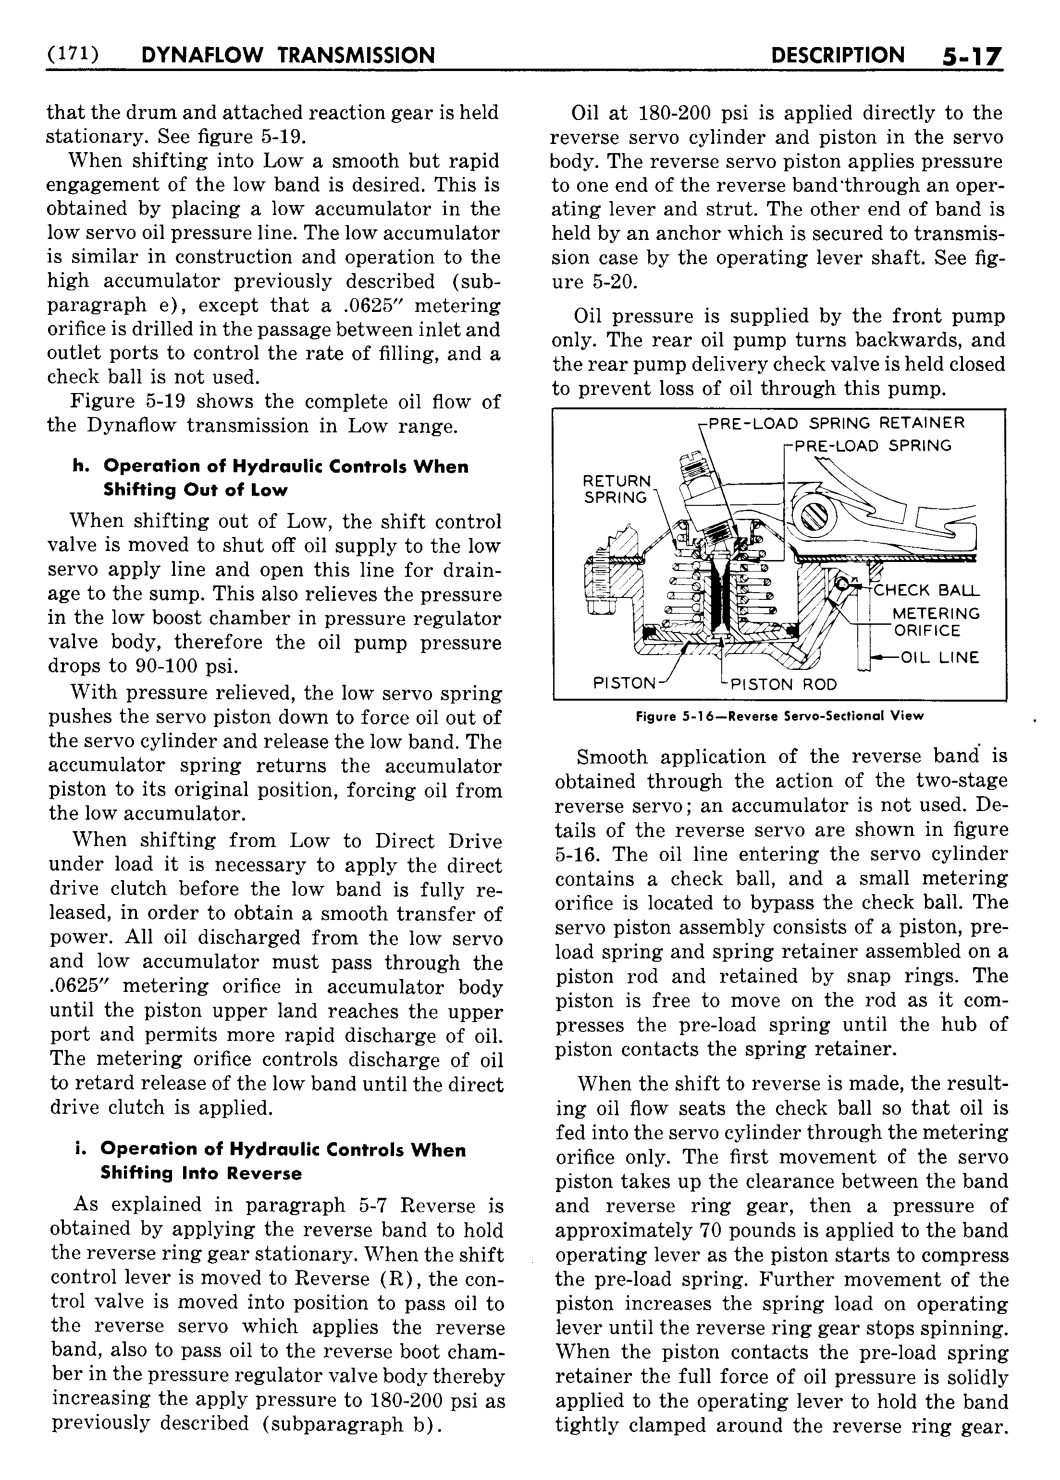 n_06 1954 Buick Shop Manual - Dynaflow-017-017.jpg